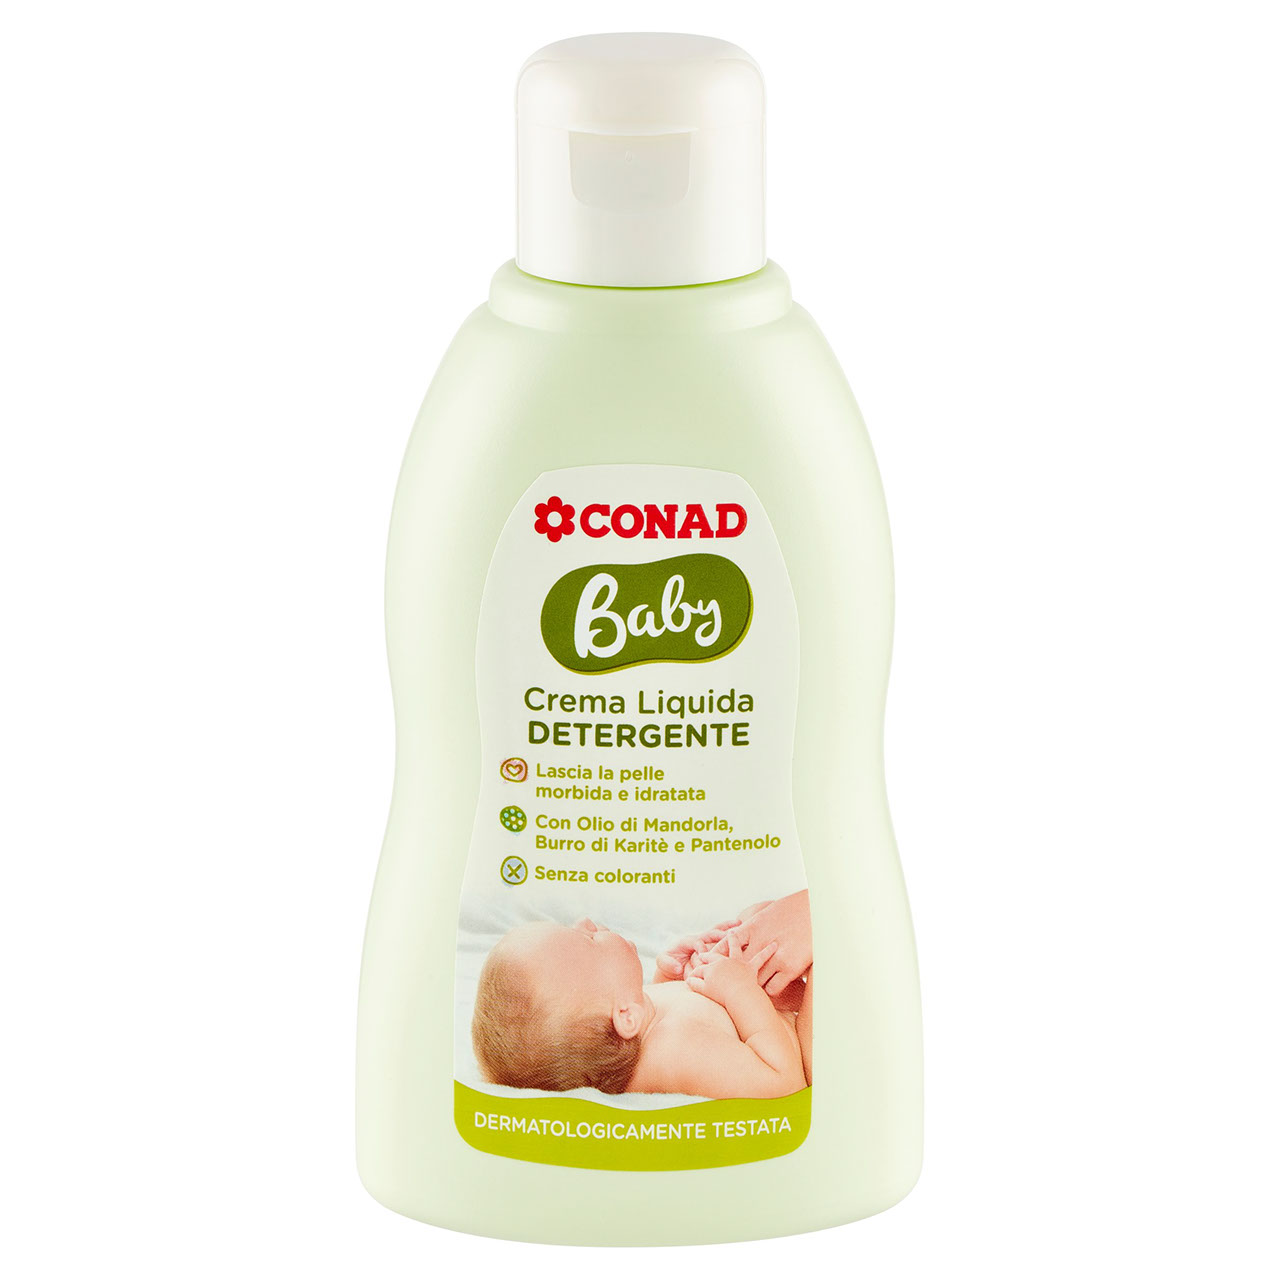 Baby Crema Liquida Detergente 200 ml Conad